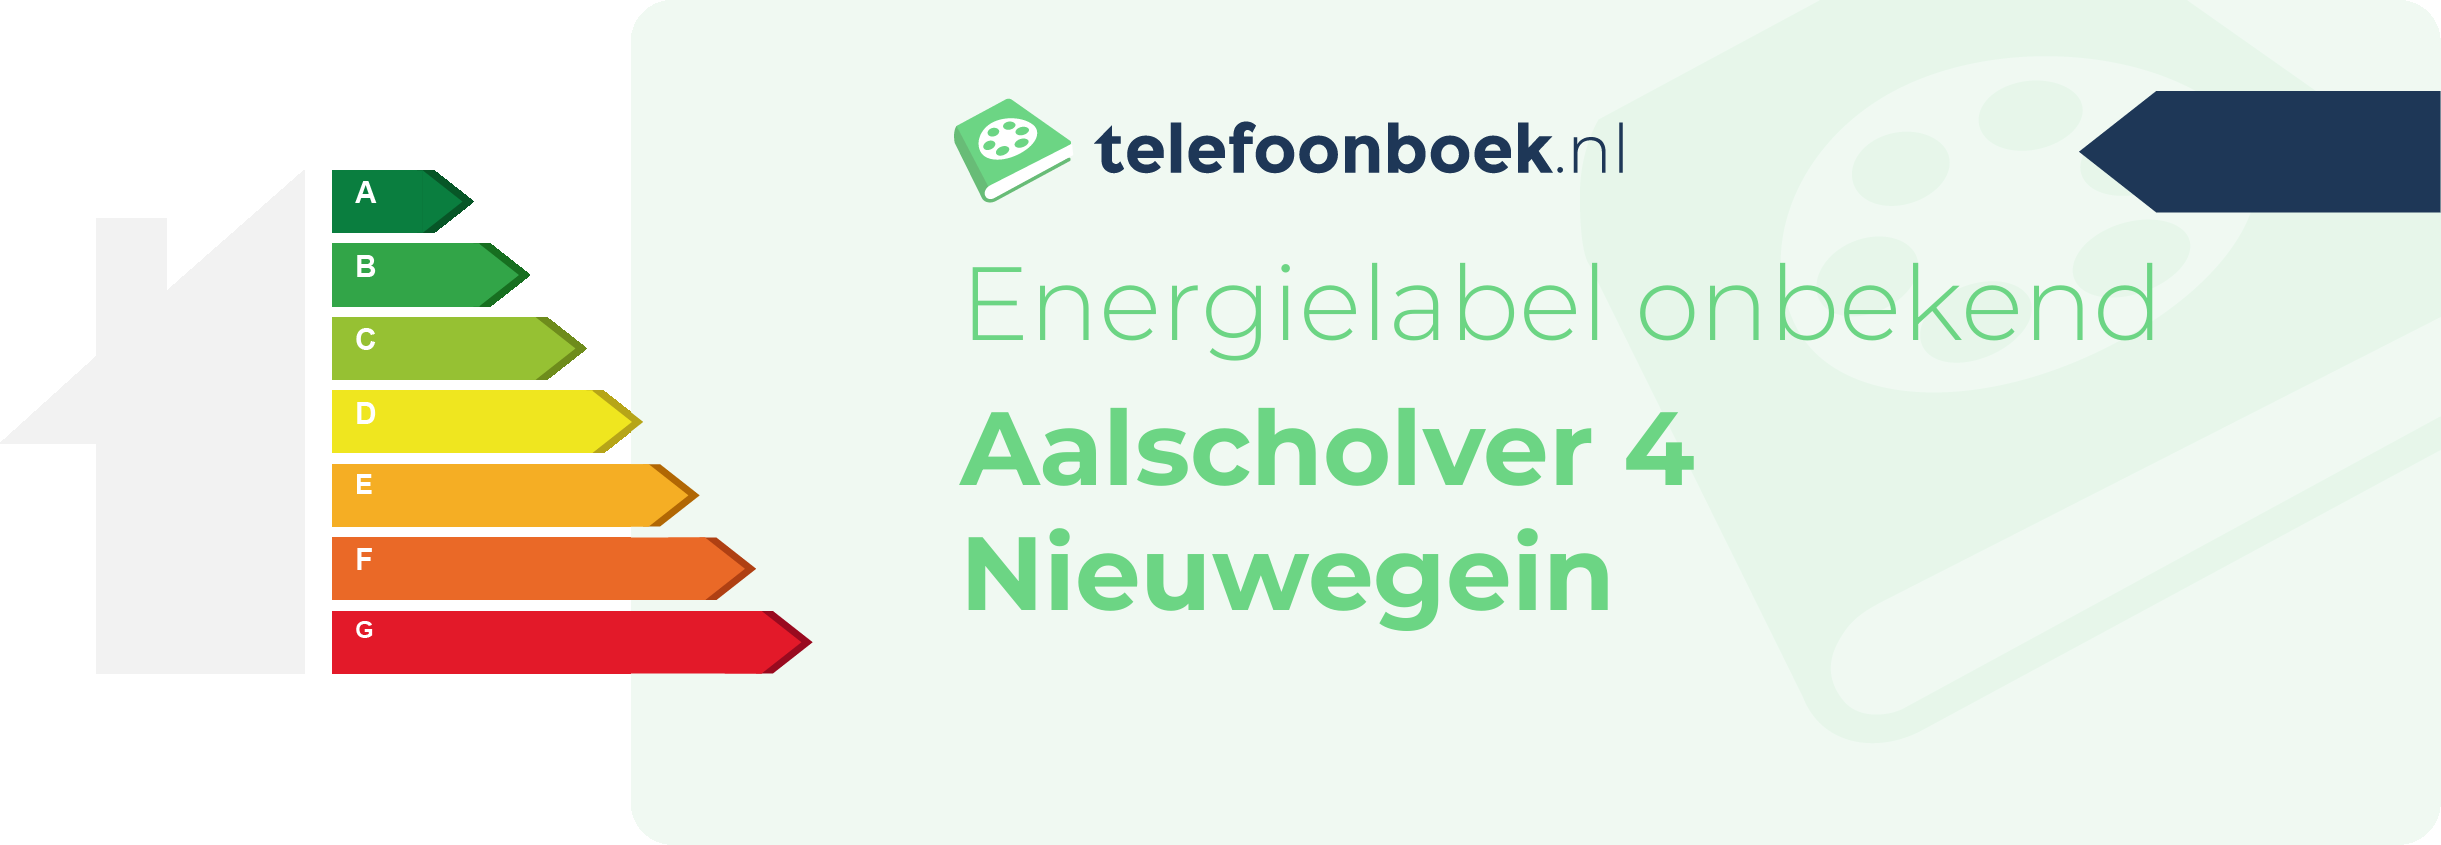 Energielabel Aalscholver 4 Nieuwegein